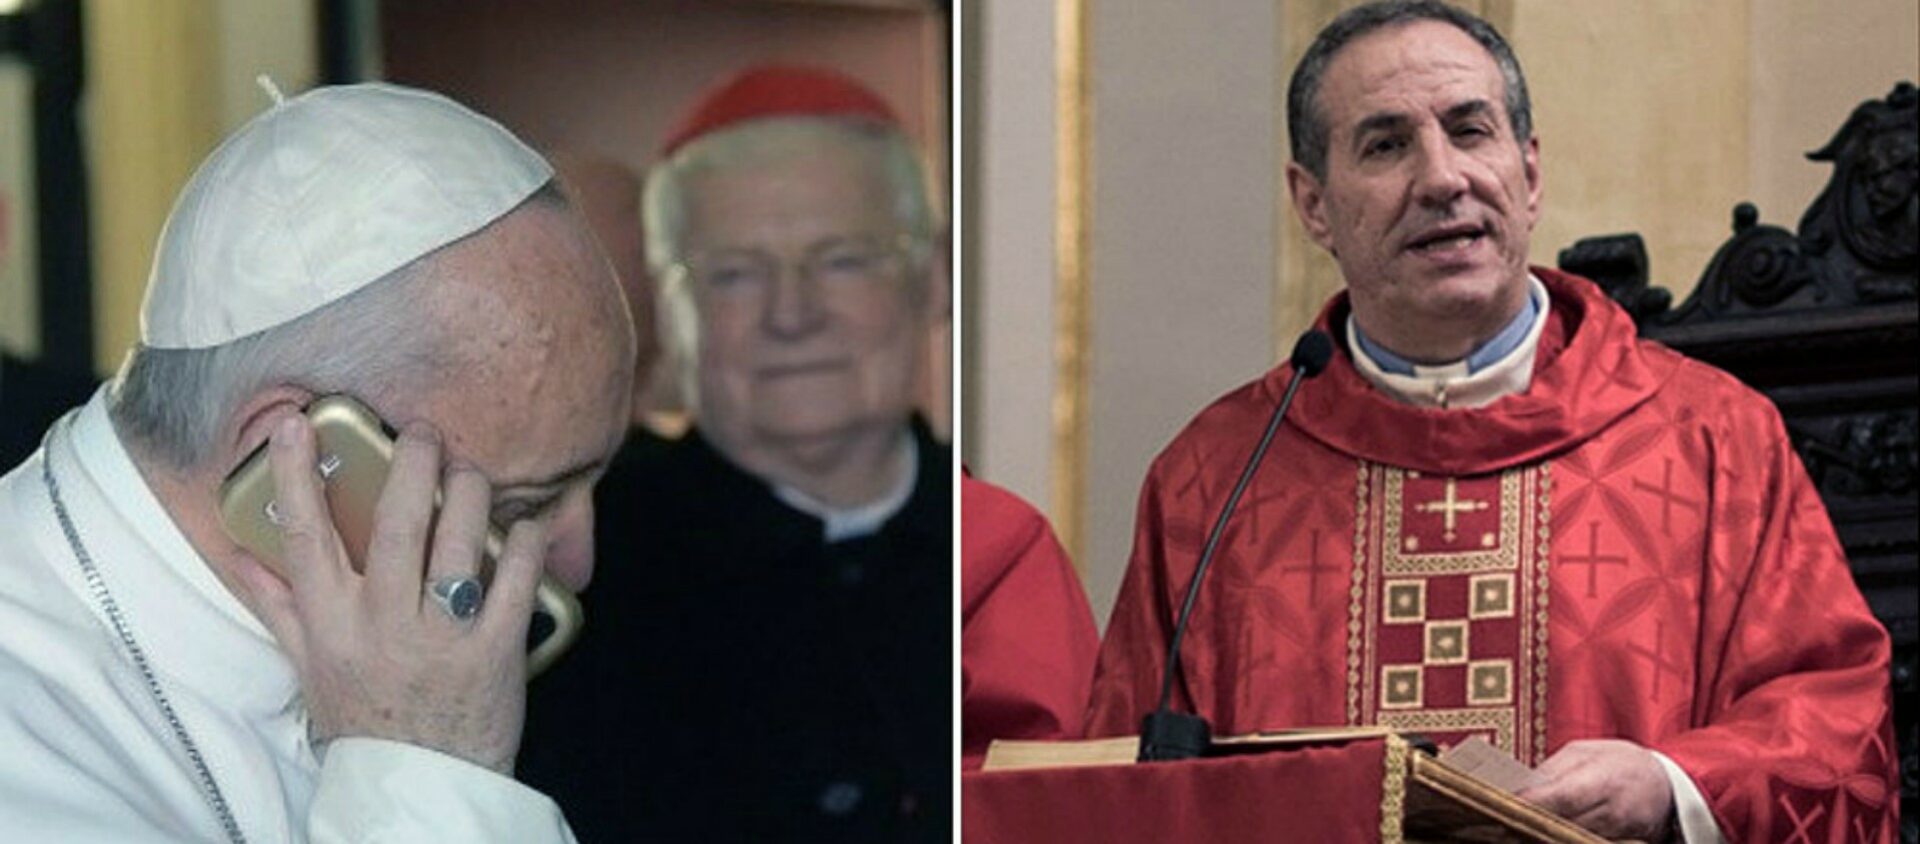 Le pape a téléphoné au Père Javier Leoz, à Pampelune, pour le féléciter de son poème sur Noël au temps du Covid Montage | © Navarra.com